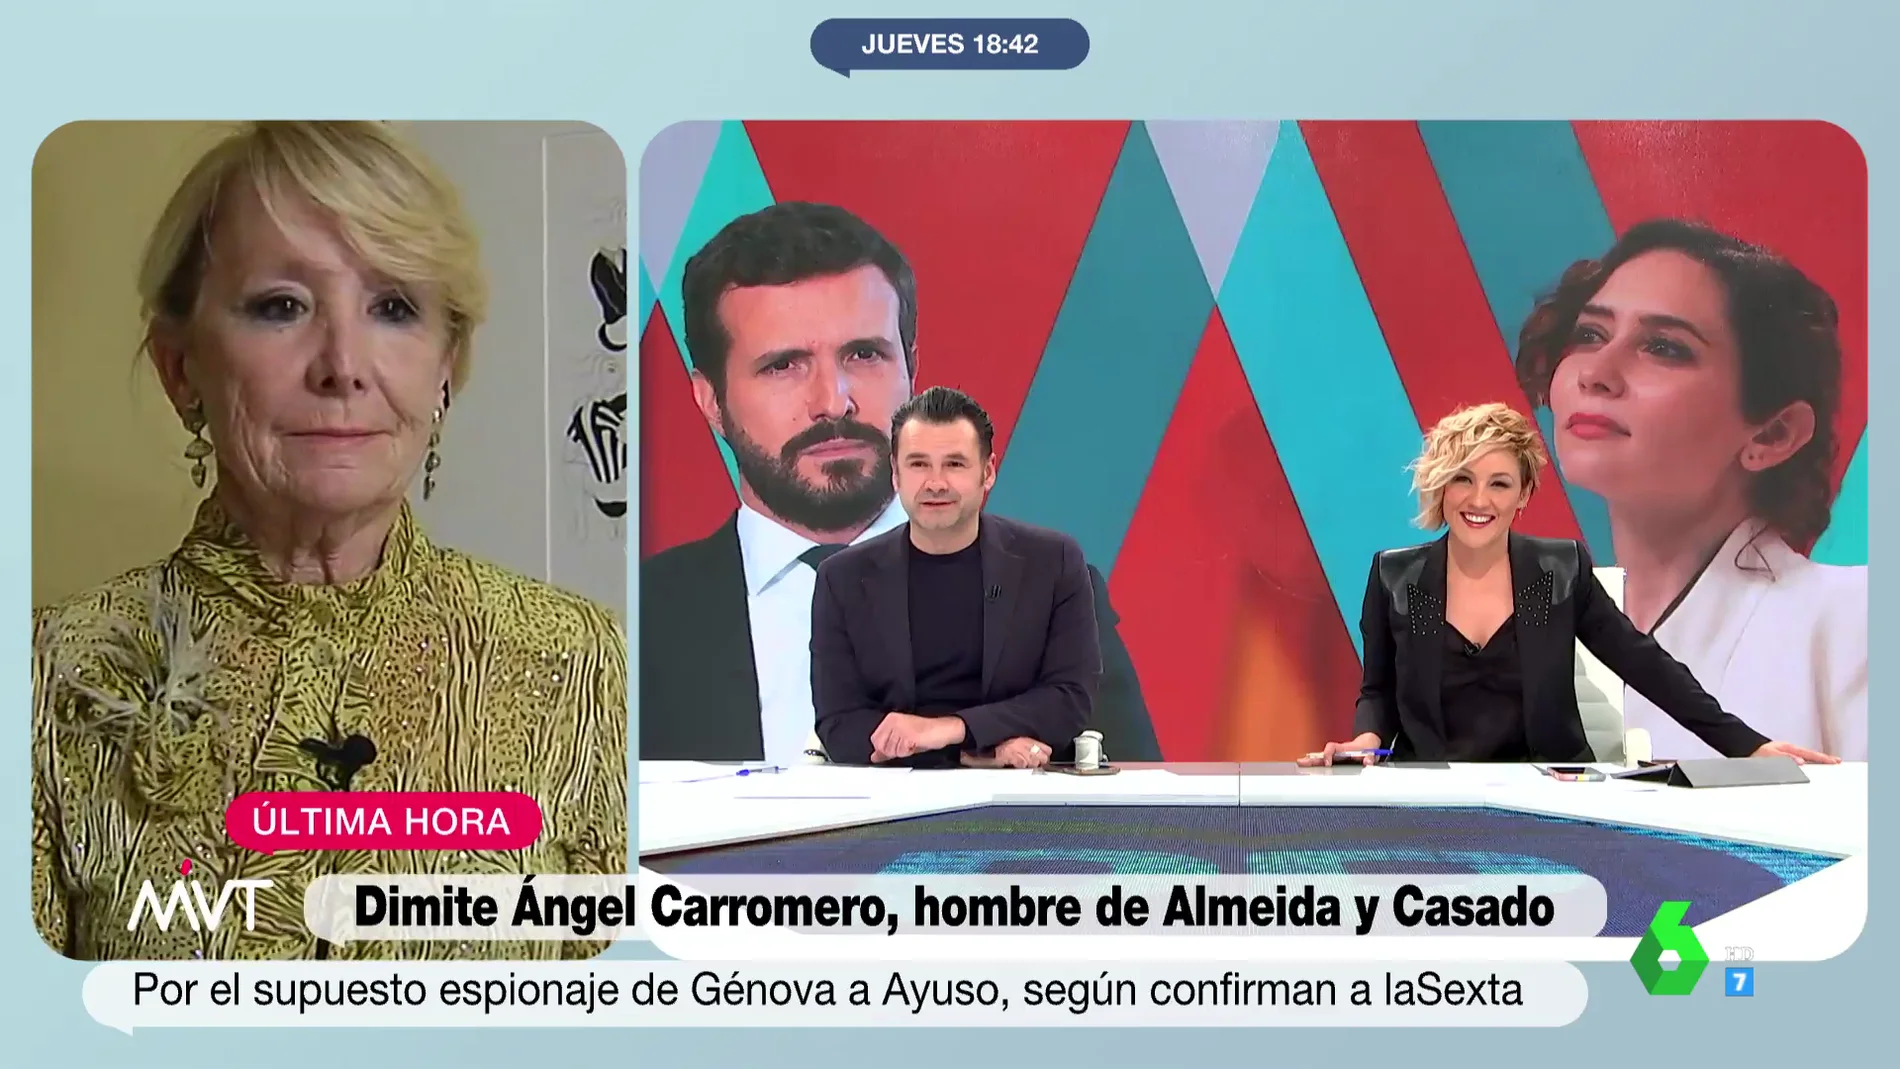 La impaciencia de Esperanza Aguirre al inicio de su entrevista en MVT: "Llevo cinco minutos esperando"